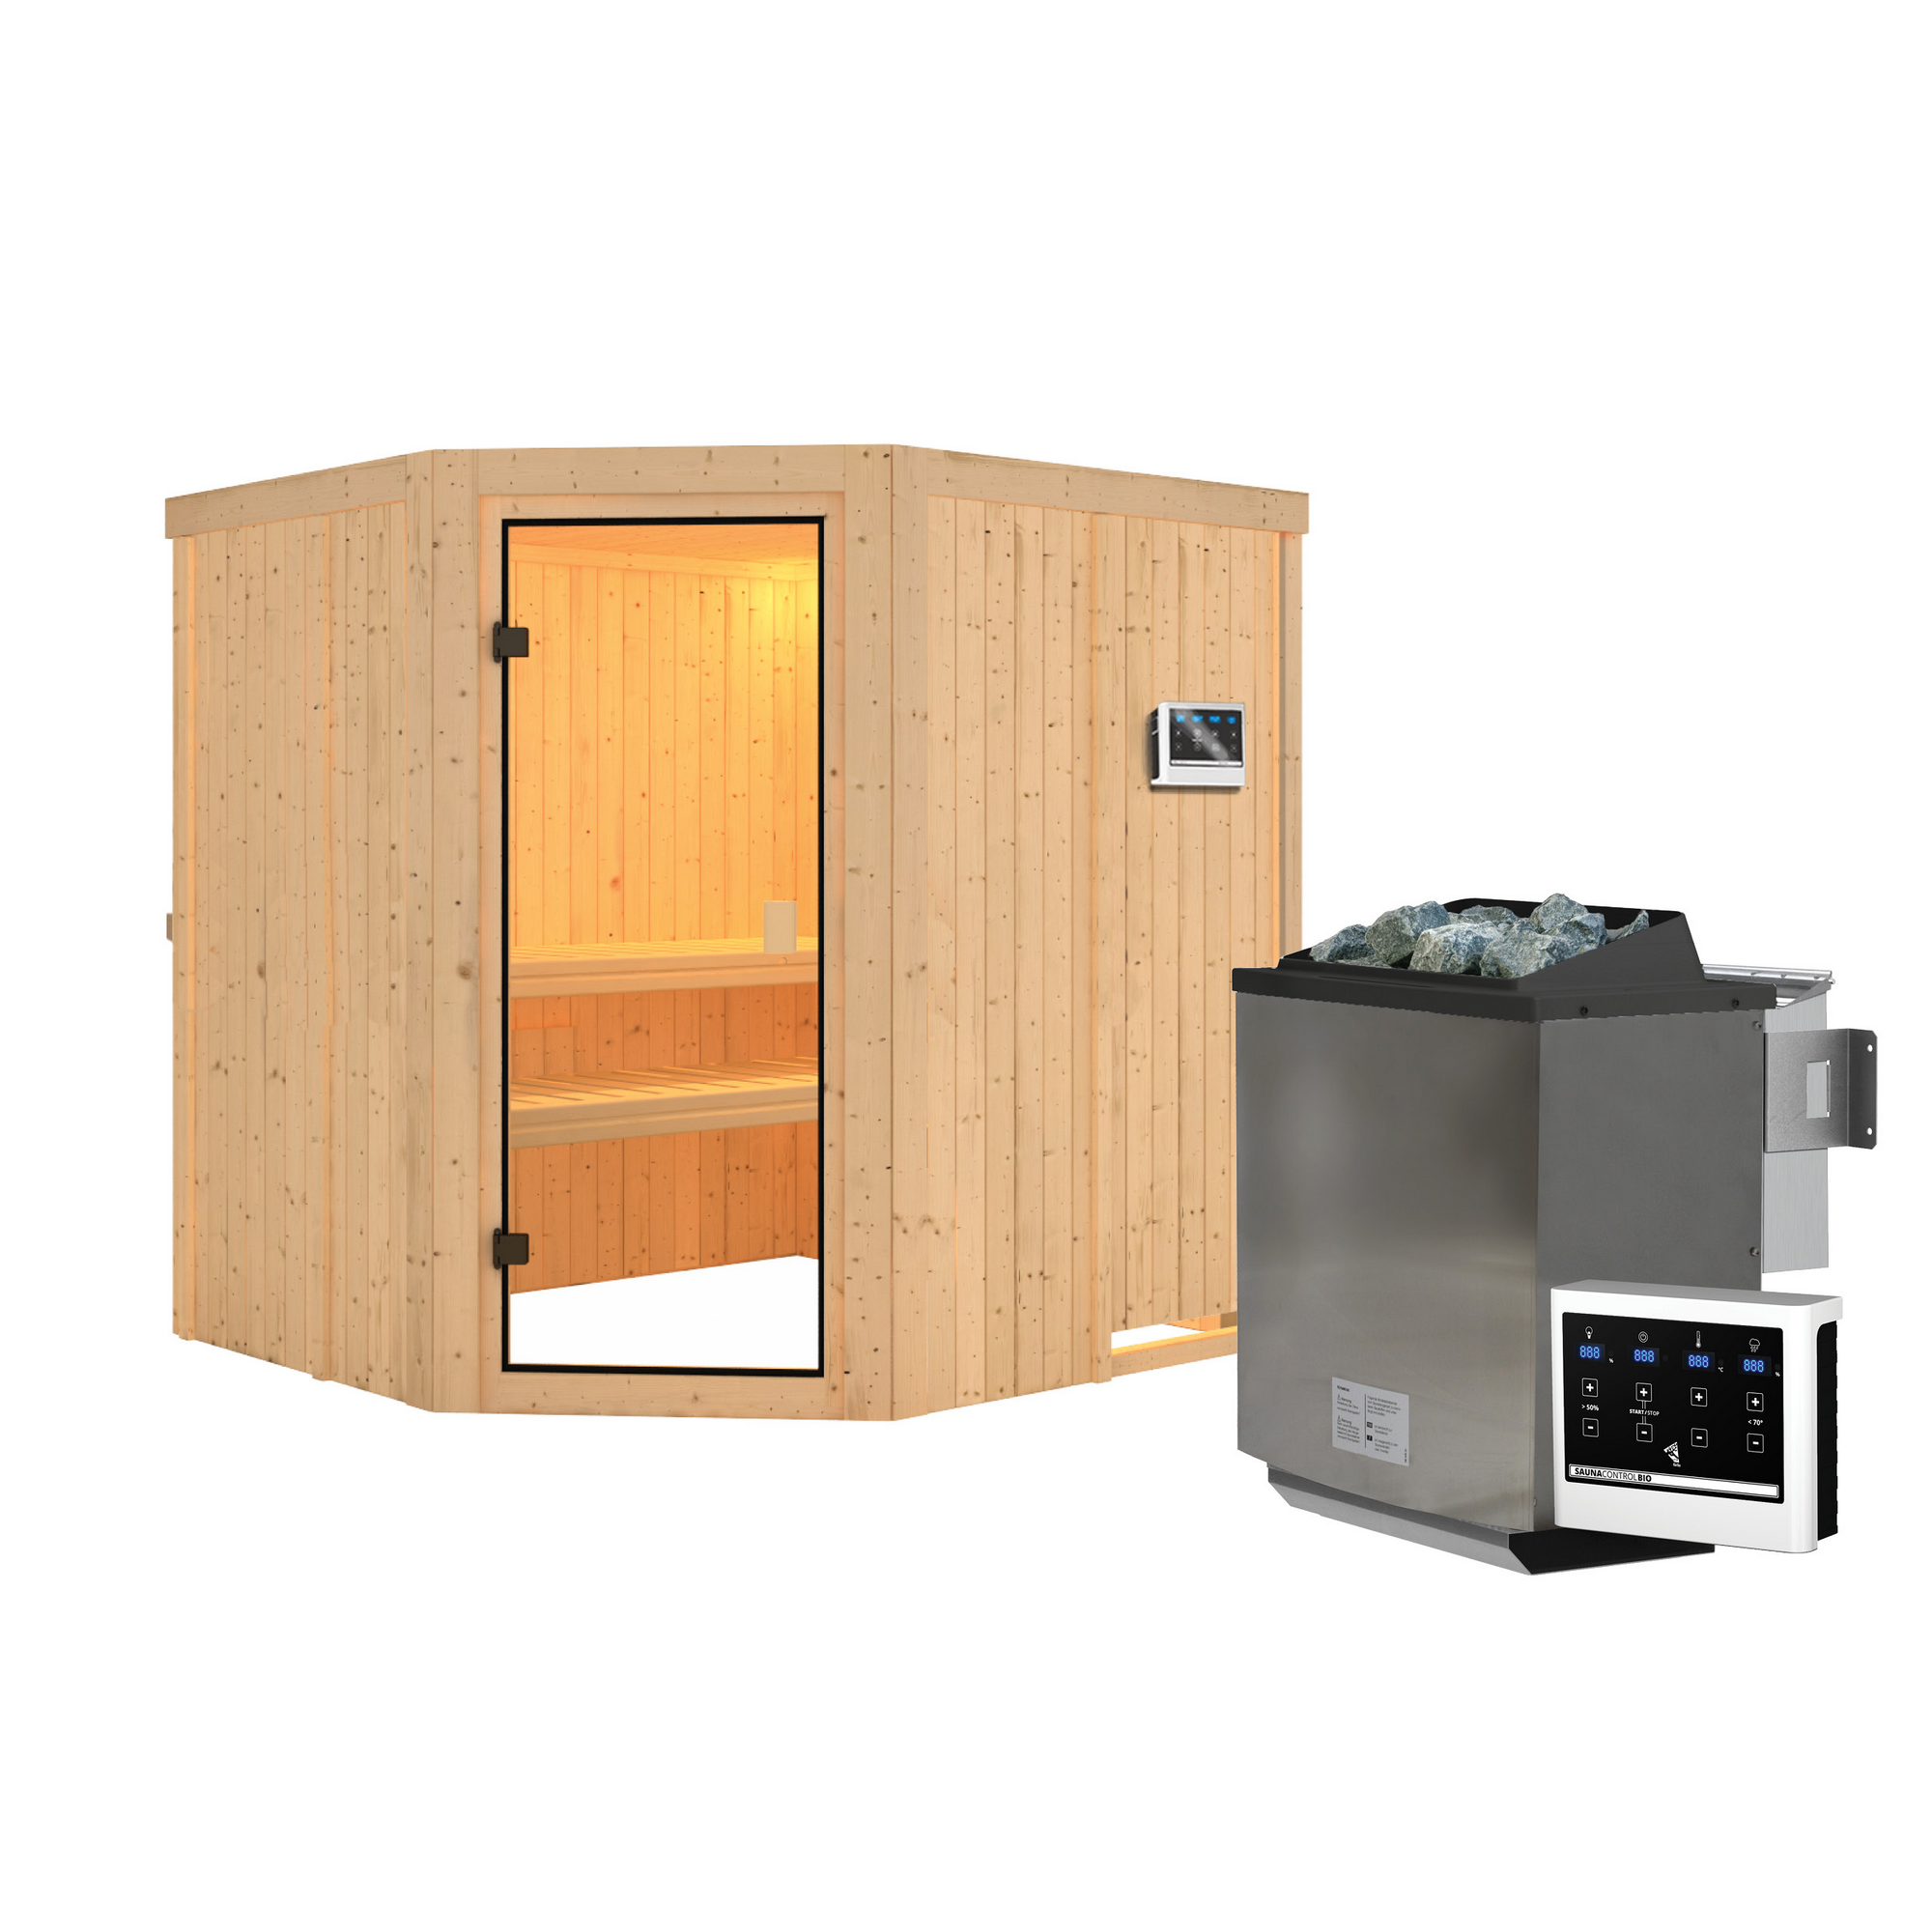 Elementsauna 'Berta' naturbelassen mit bronzierter Tür 9 kW Bio-Ofen mit externe Steuerung 196 x 178 x 198 cm + product picture